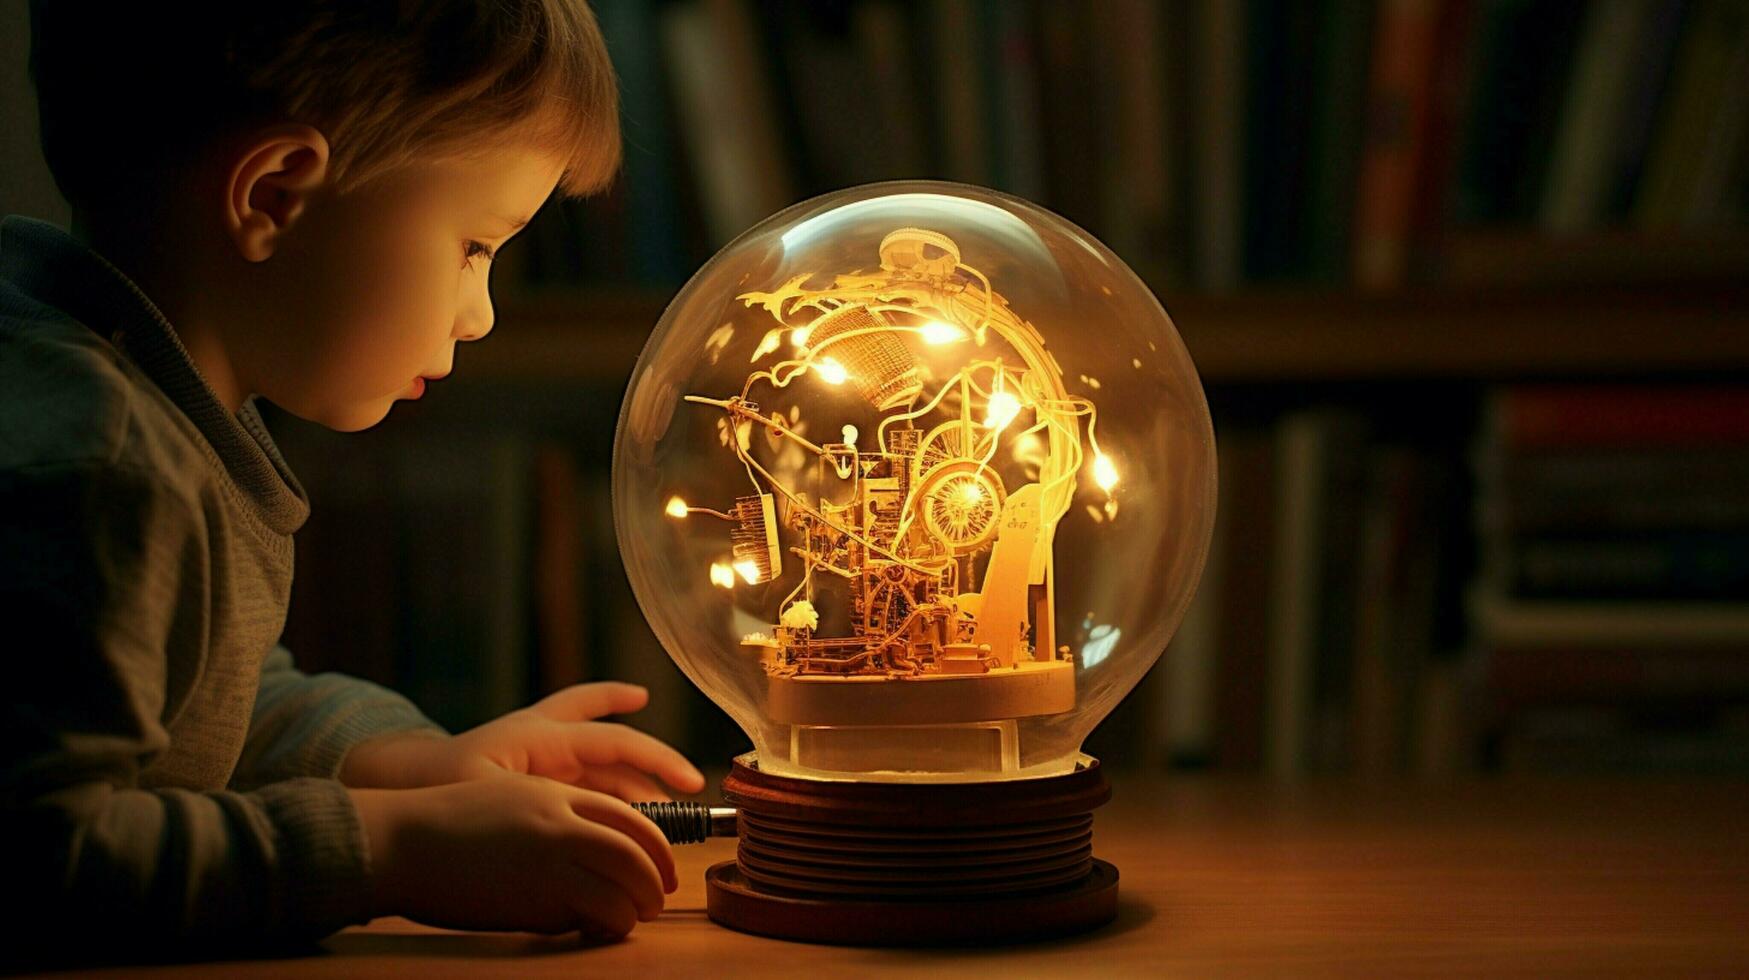 brillante eléctrico lámpara enciende imaginación con creatividad foto